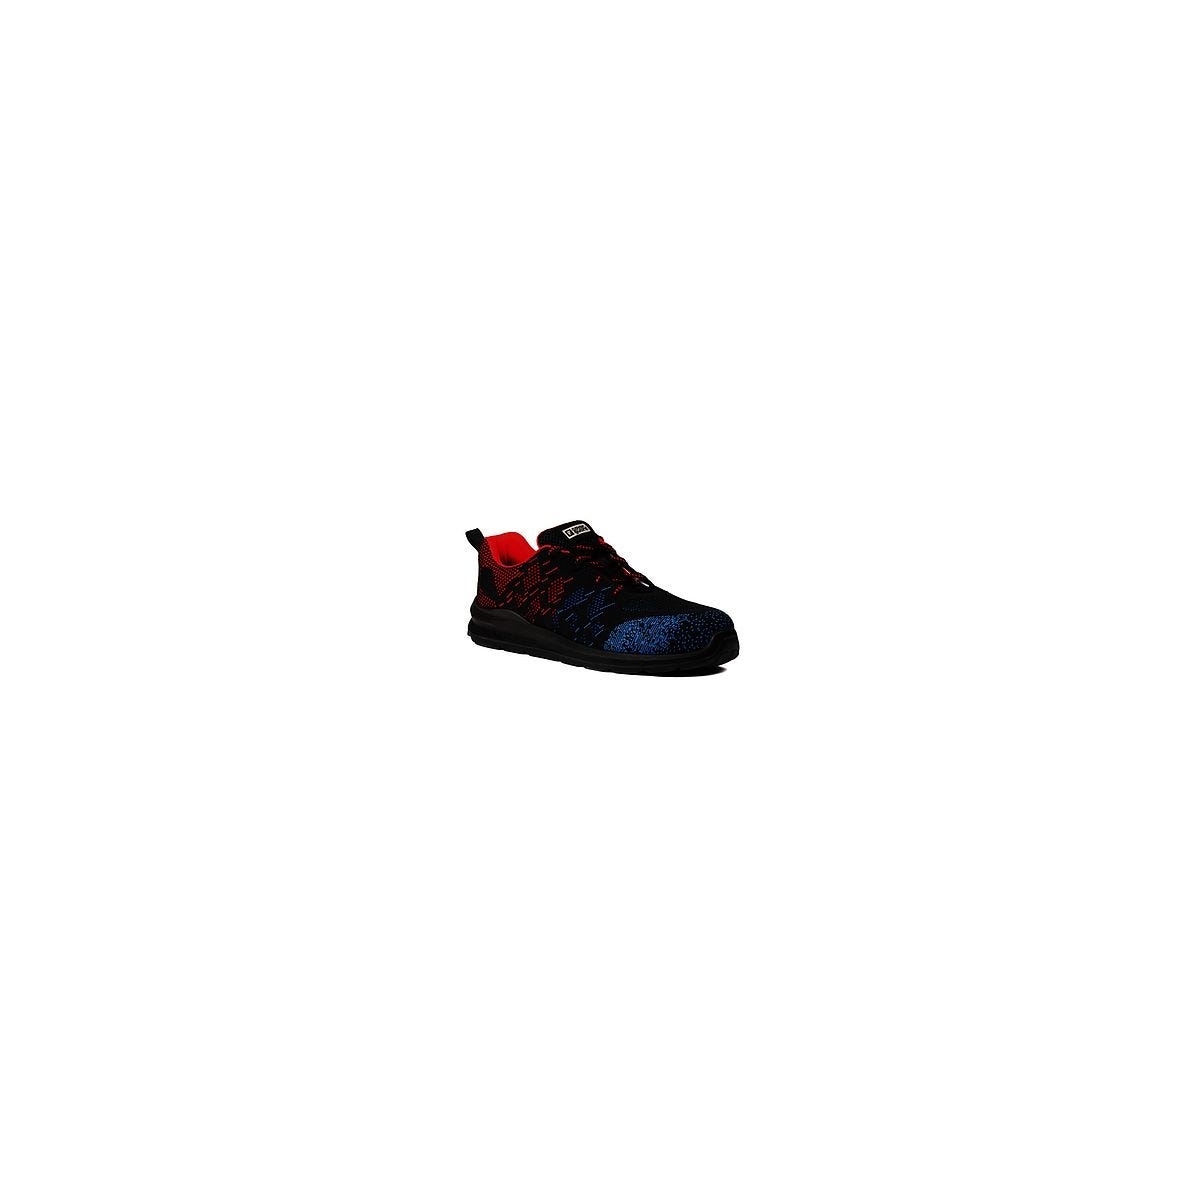 Chaussures de sécurité OTAVITE S1P Basse Noir/Rouge/Bleu - COVERGUARD - Taille 40 0